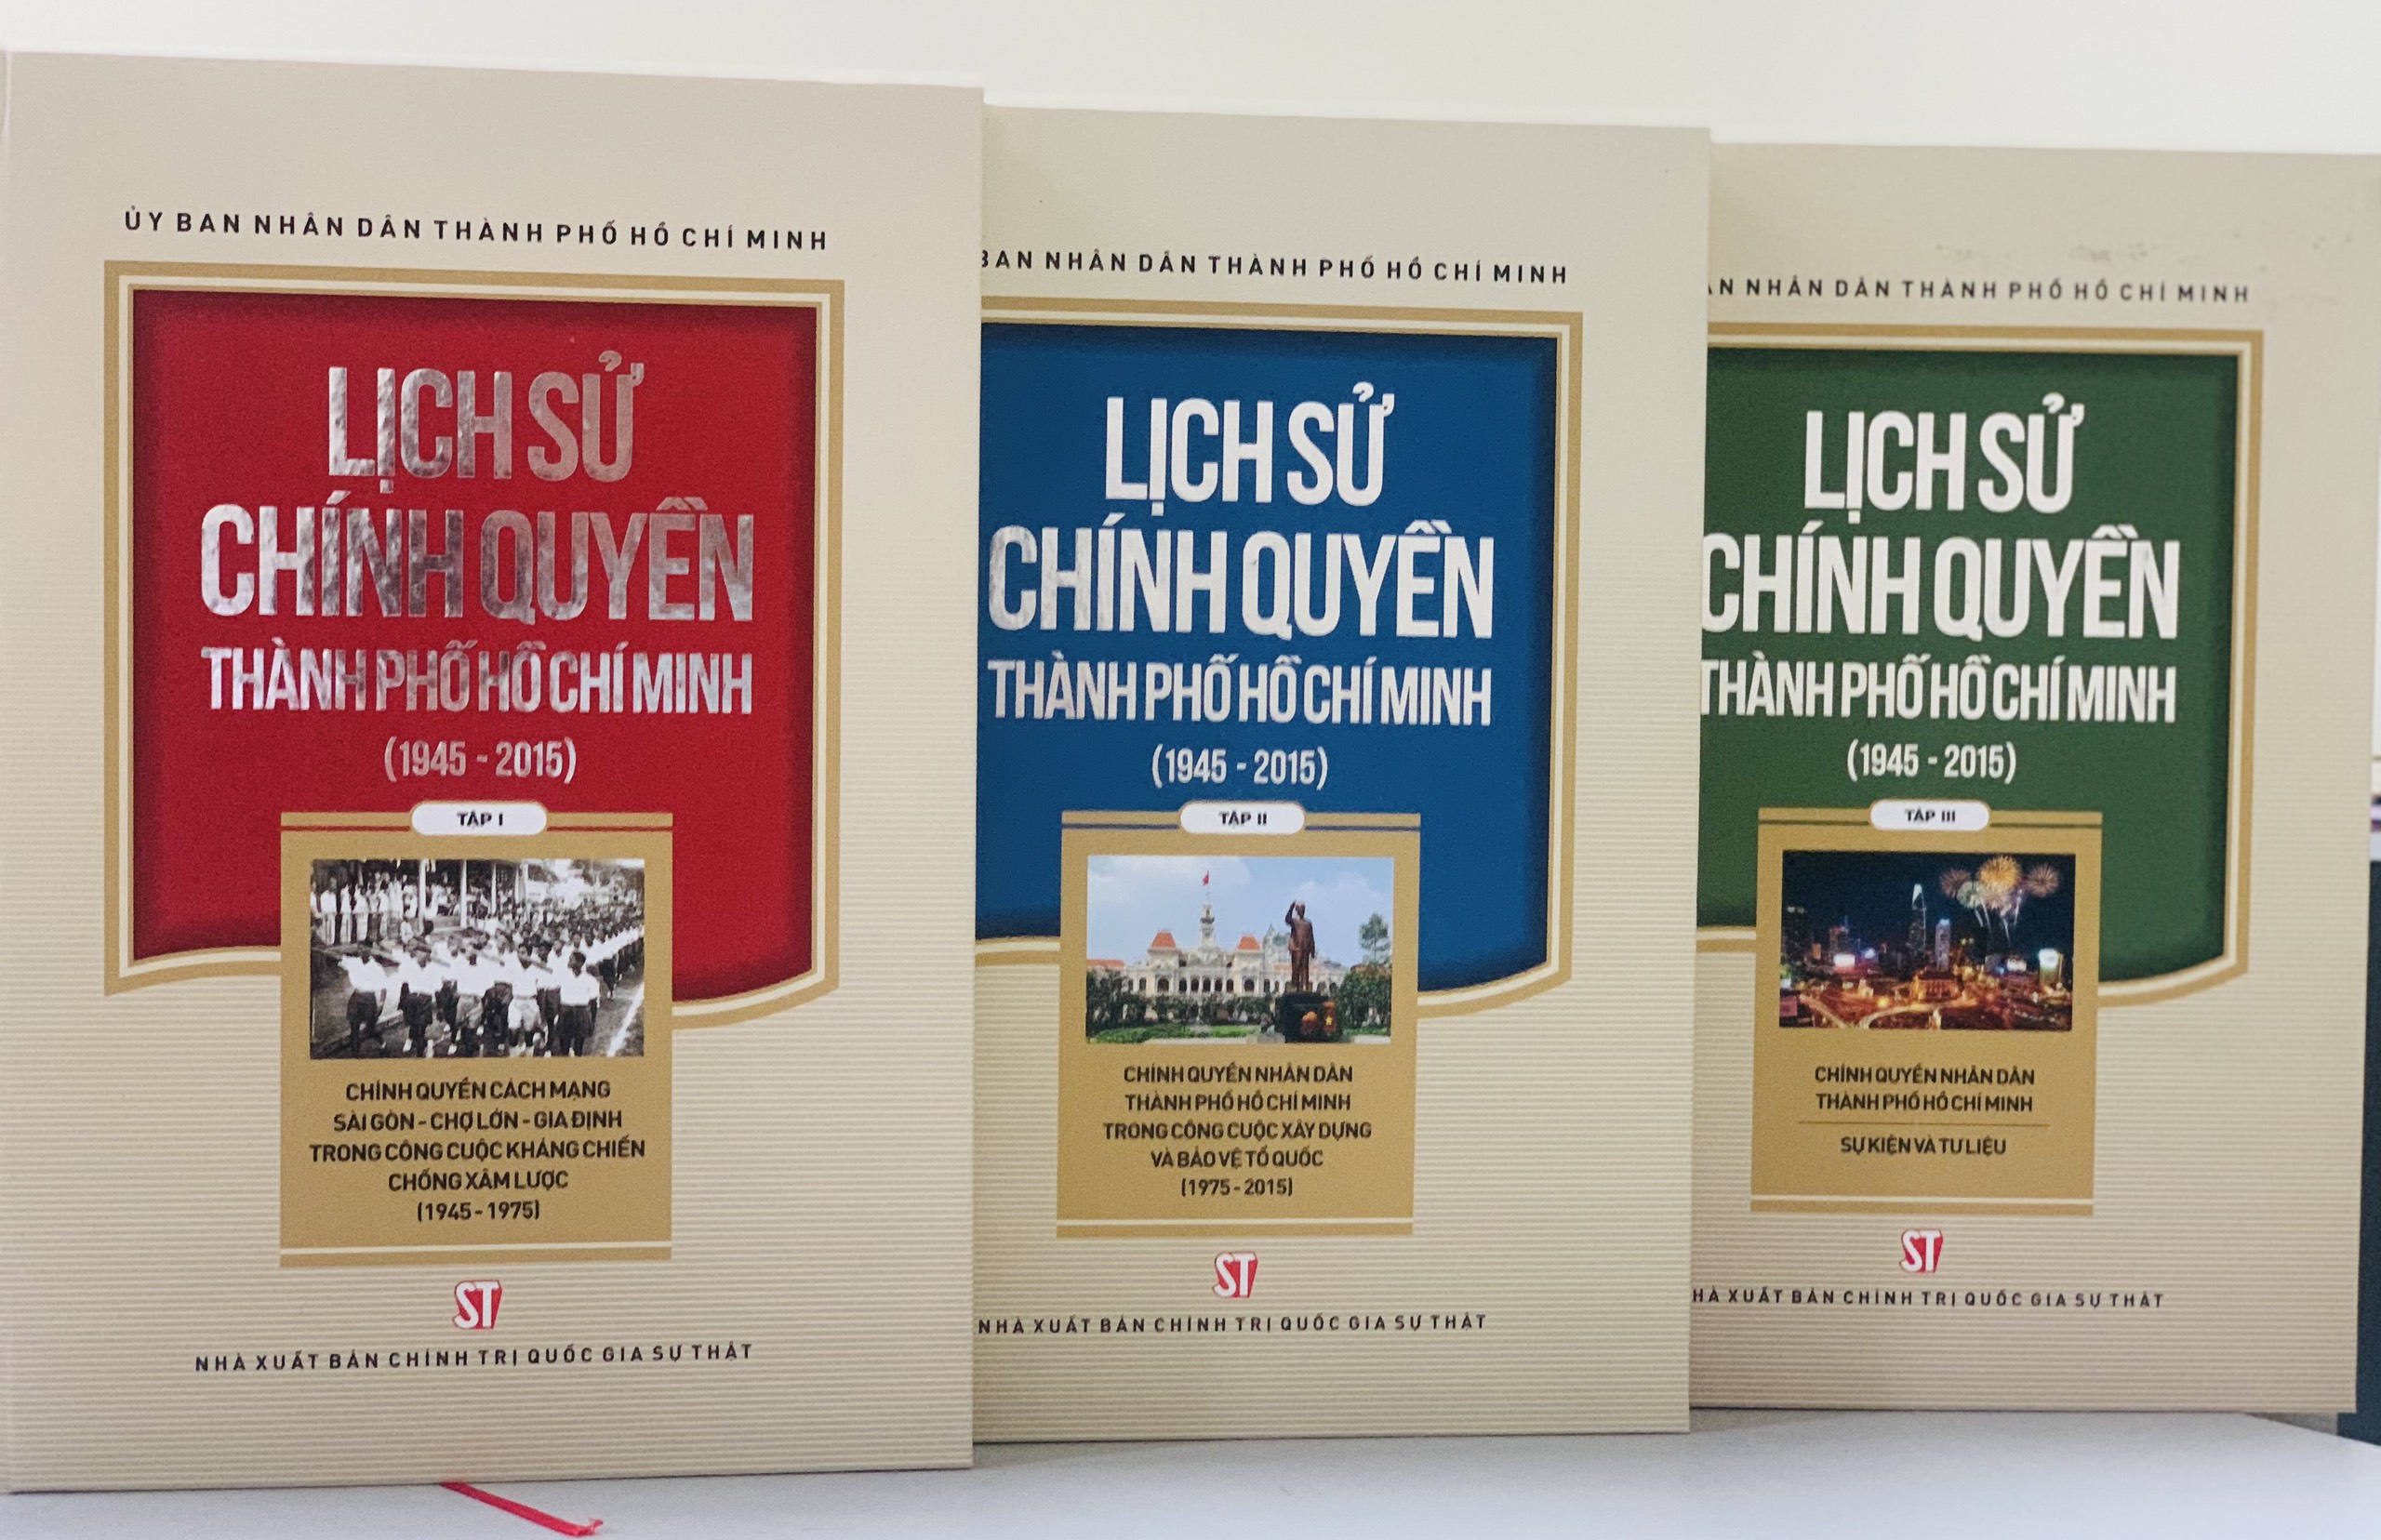 Lịch sử chính quyền Thành phố Hồ Chí Minh (1945 - 2015)